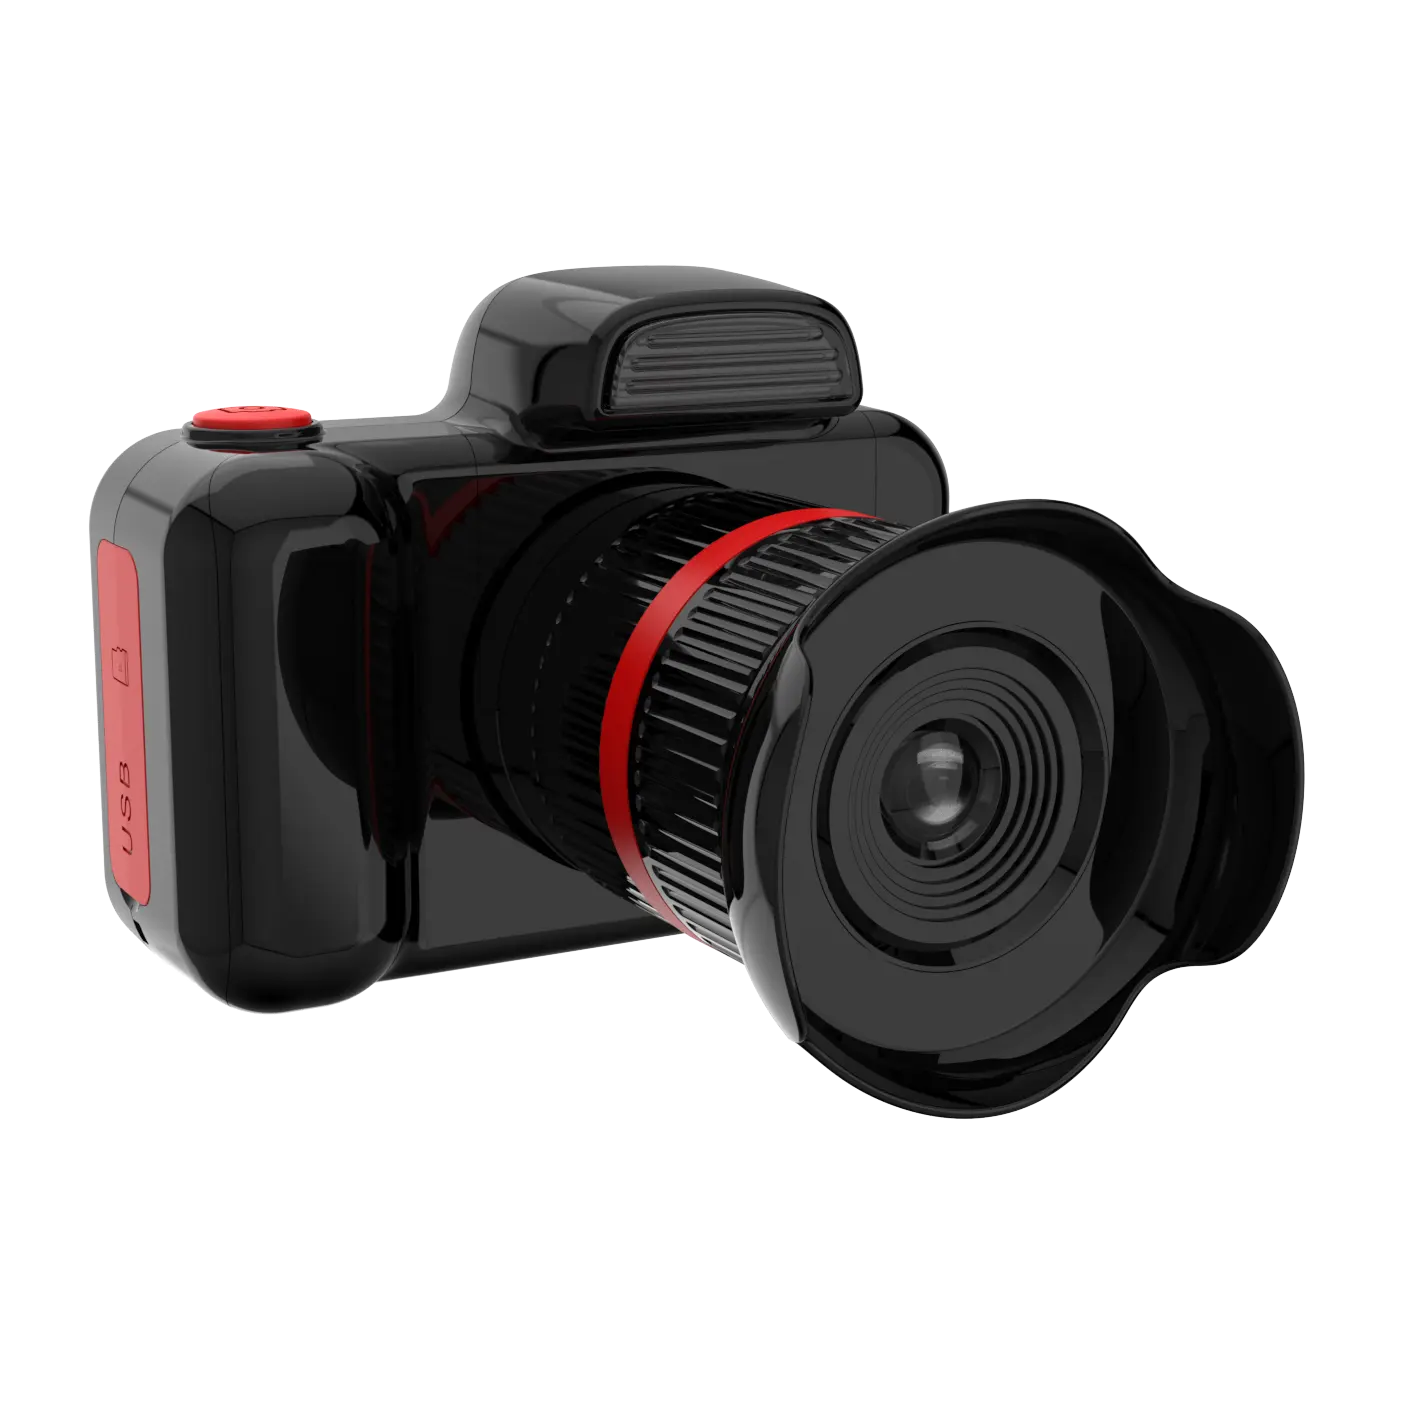 A buon mercato di buona qualità automatico luminosità giocattolo 1080p bambini fotocamera digitale 2.0 pollici ips selfie videoregistratore giocattoli regalo per i bambini